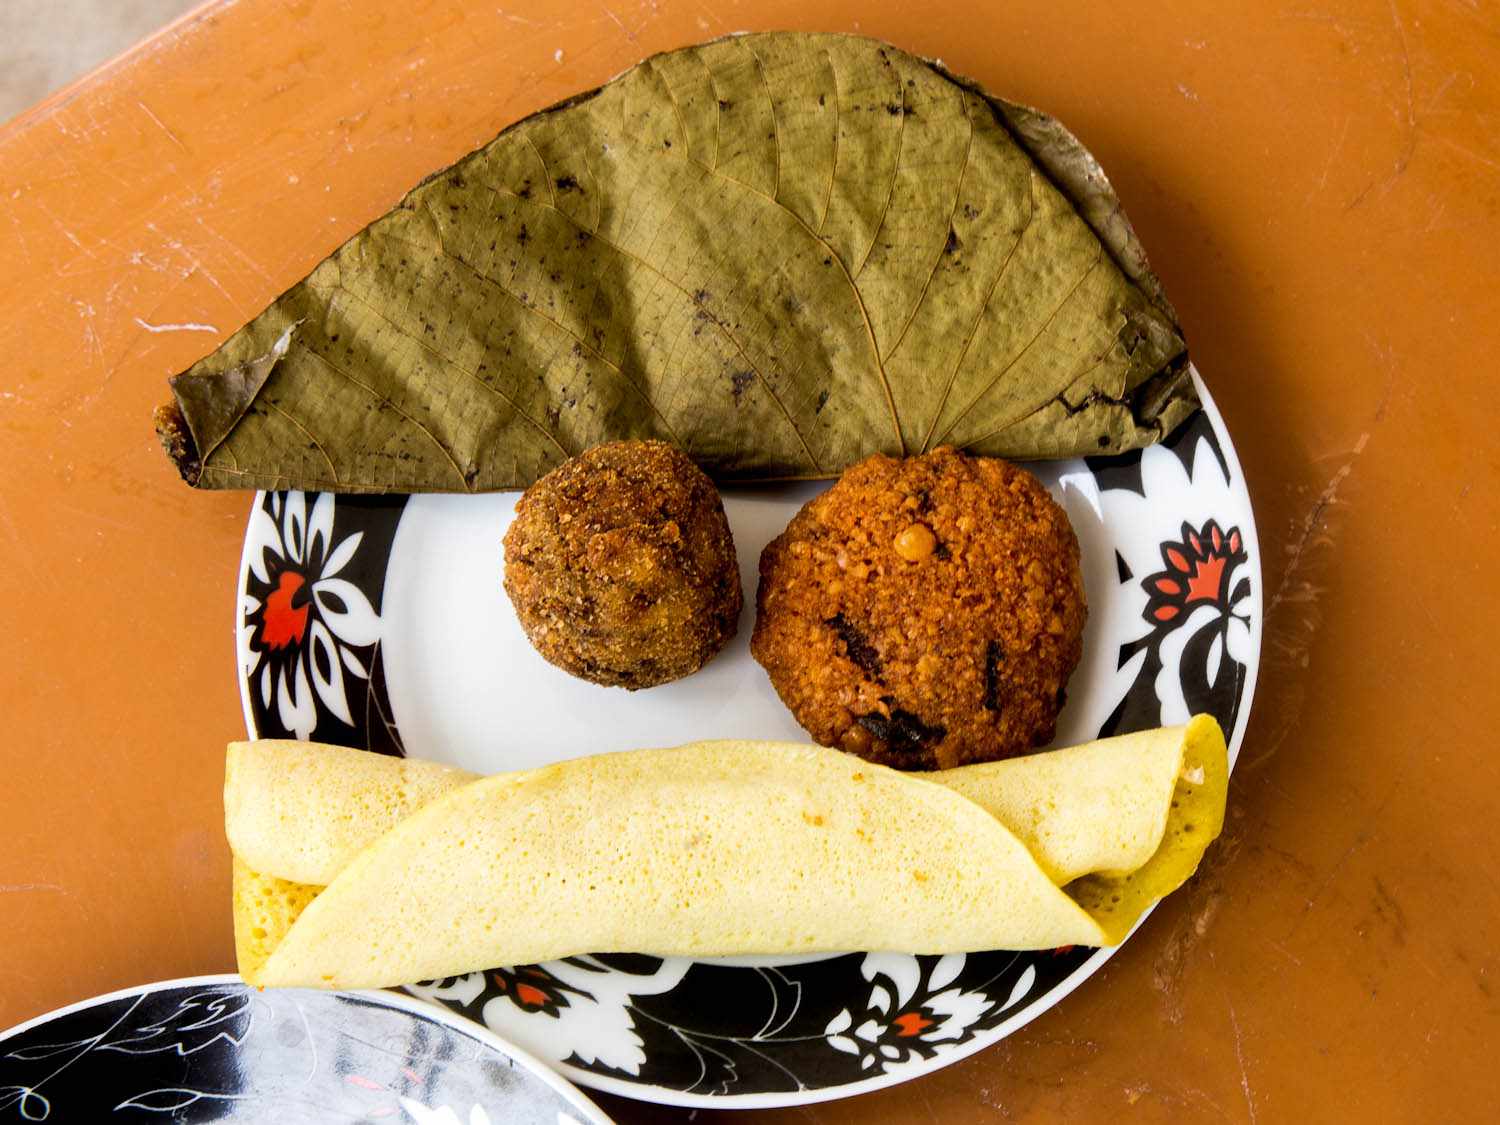 20140802——斯里兰卡,斯里兰卡-食物- halapa甜甜-椰子煎饼tomky.jpg——拿俄米